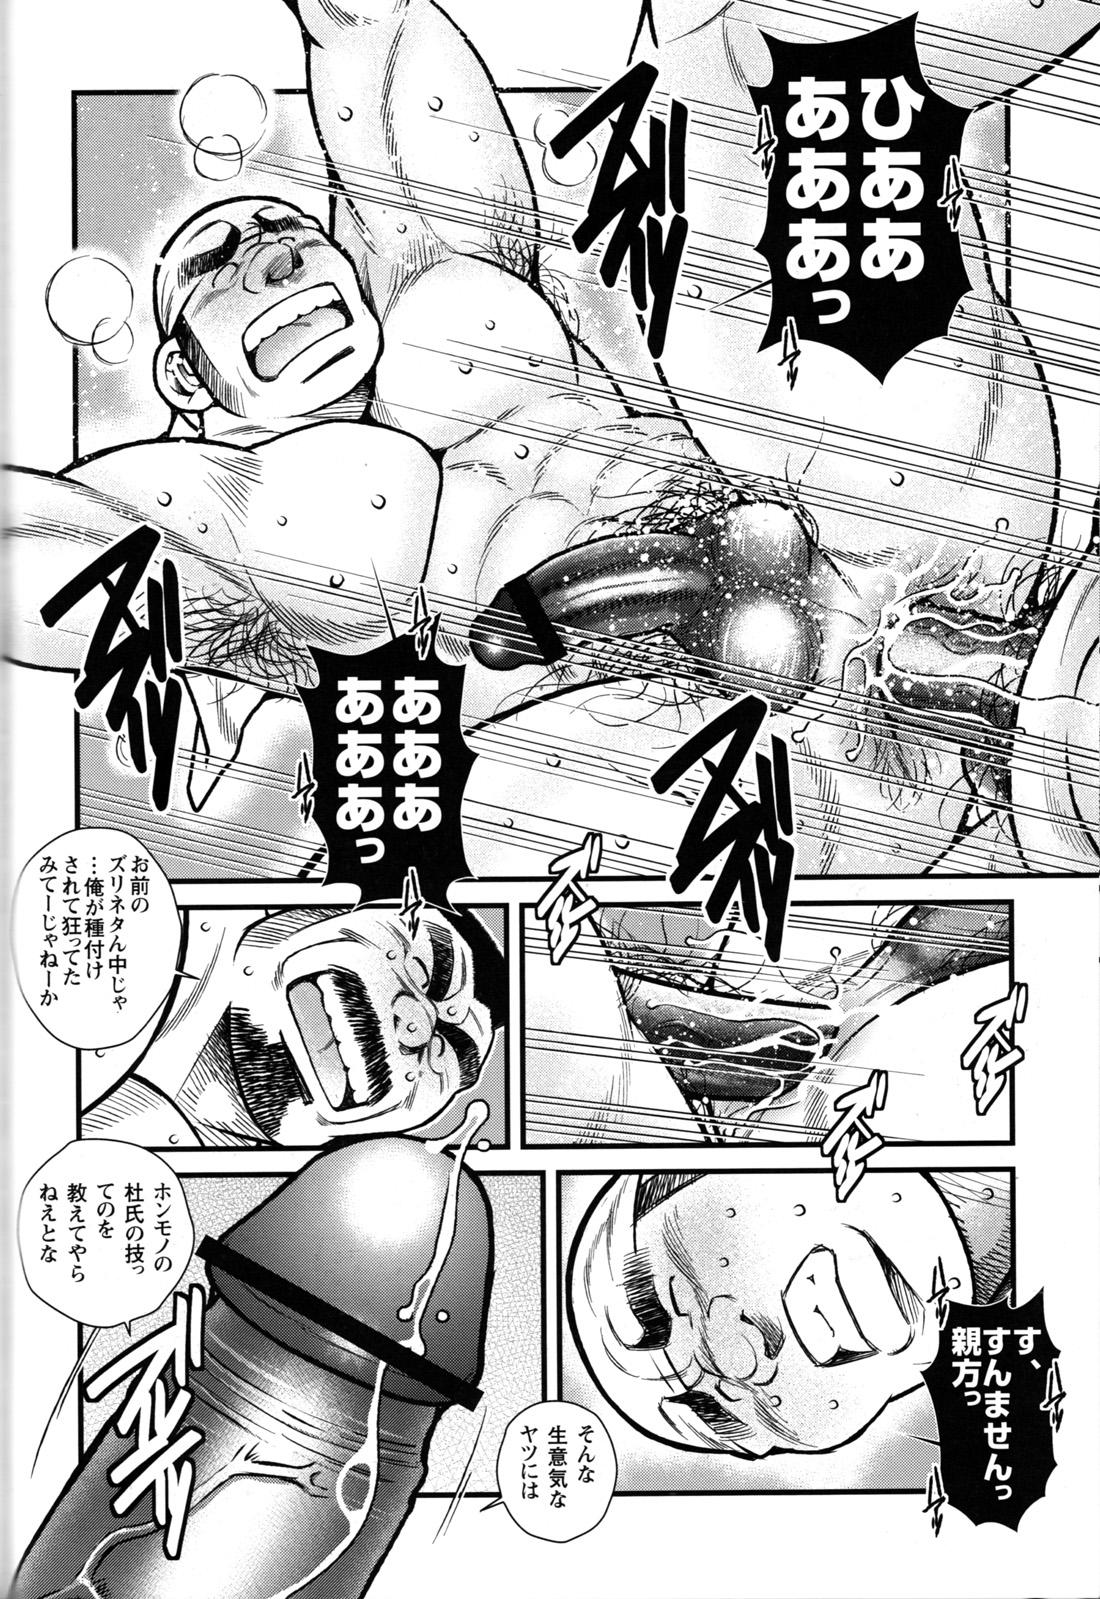 Comic G-men Gaho No.09 Gacchibi Zeme 64